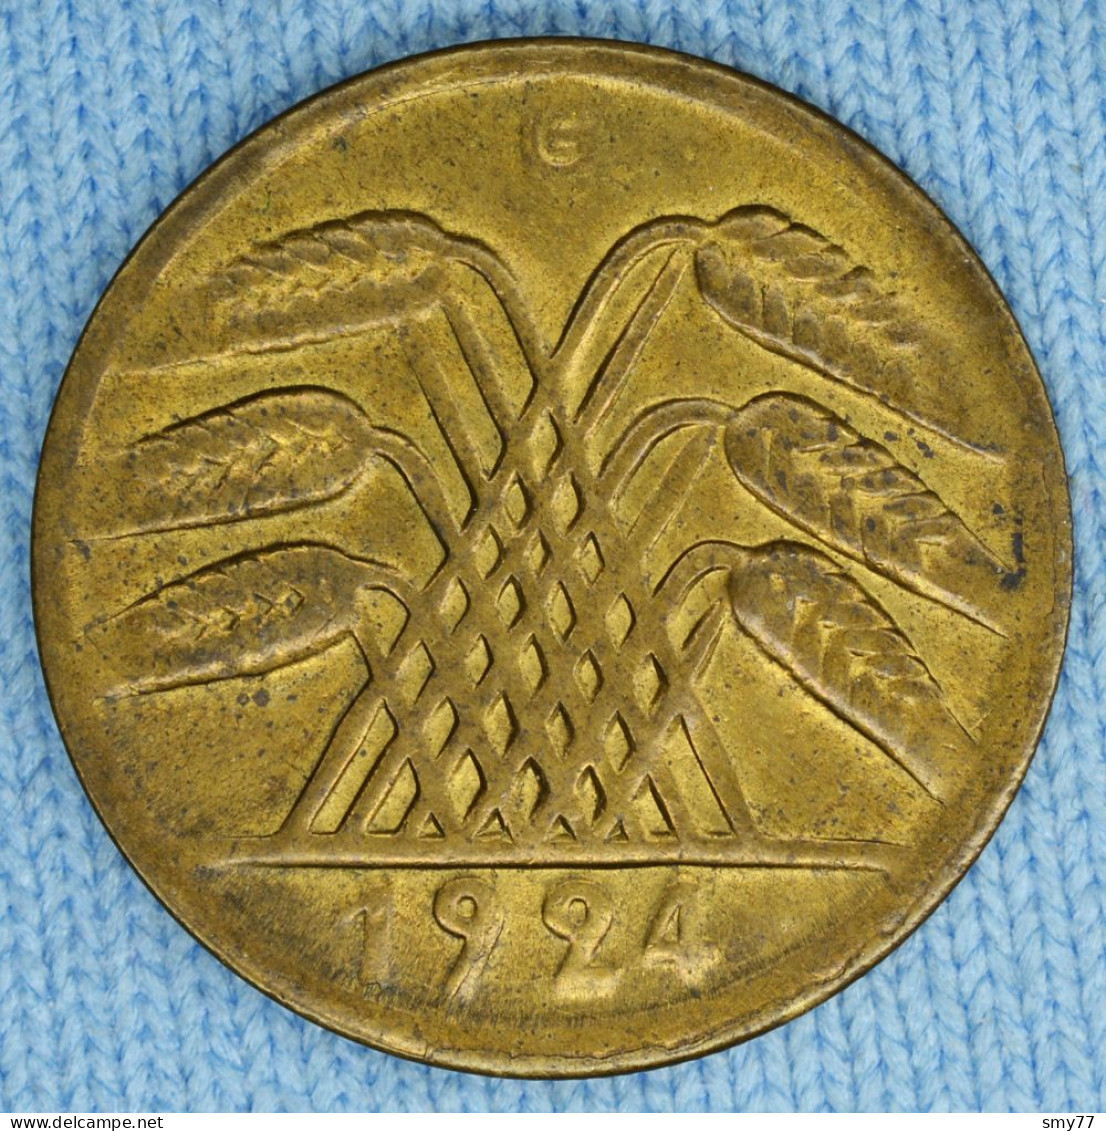 50 Rentenpfennig 1924 G • Keydate • Deutschland - Germany Weimar • Weak Strike • [24-207] - 50 Rentenpfennig & 50 Reichspfennig